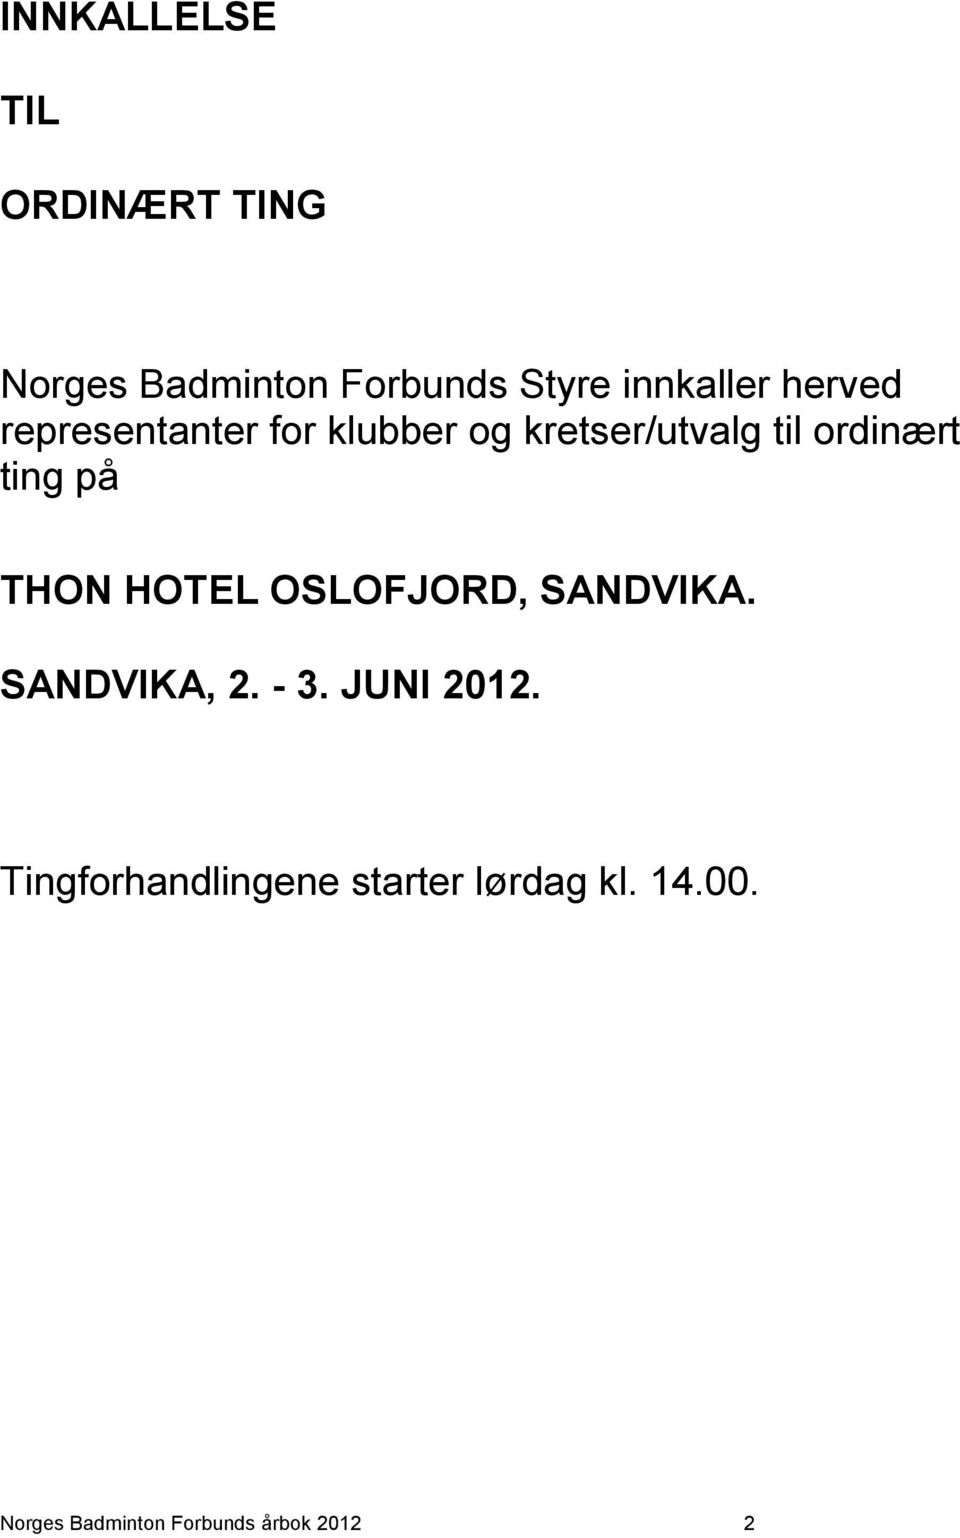 THON HOTEL OSLOFJORD, SANDVIKA. SANDVIKA, 2. - 3. JUNI 2012.